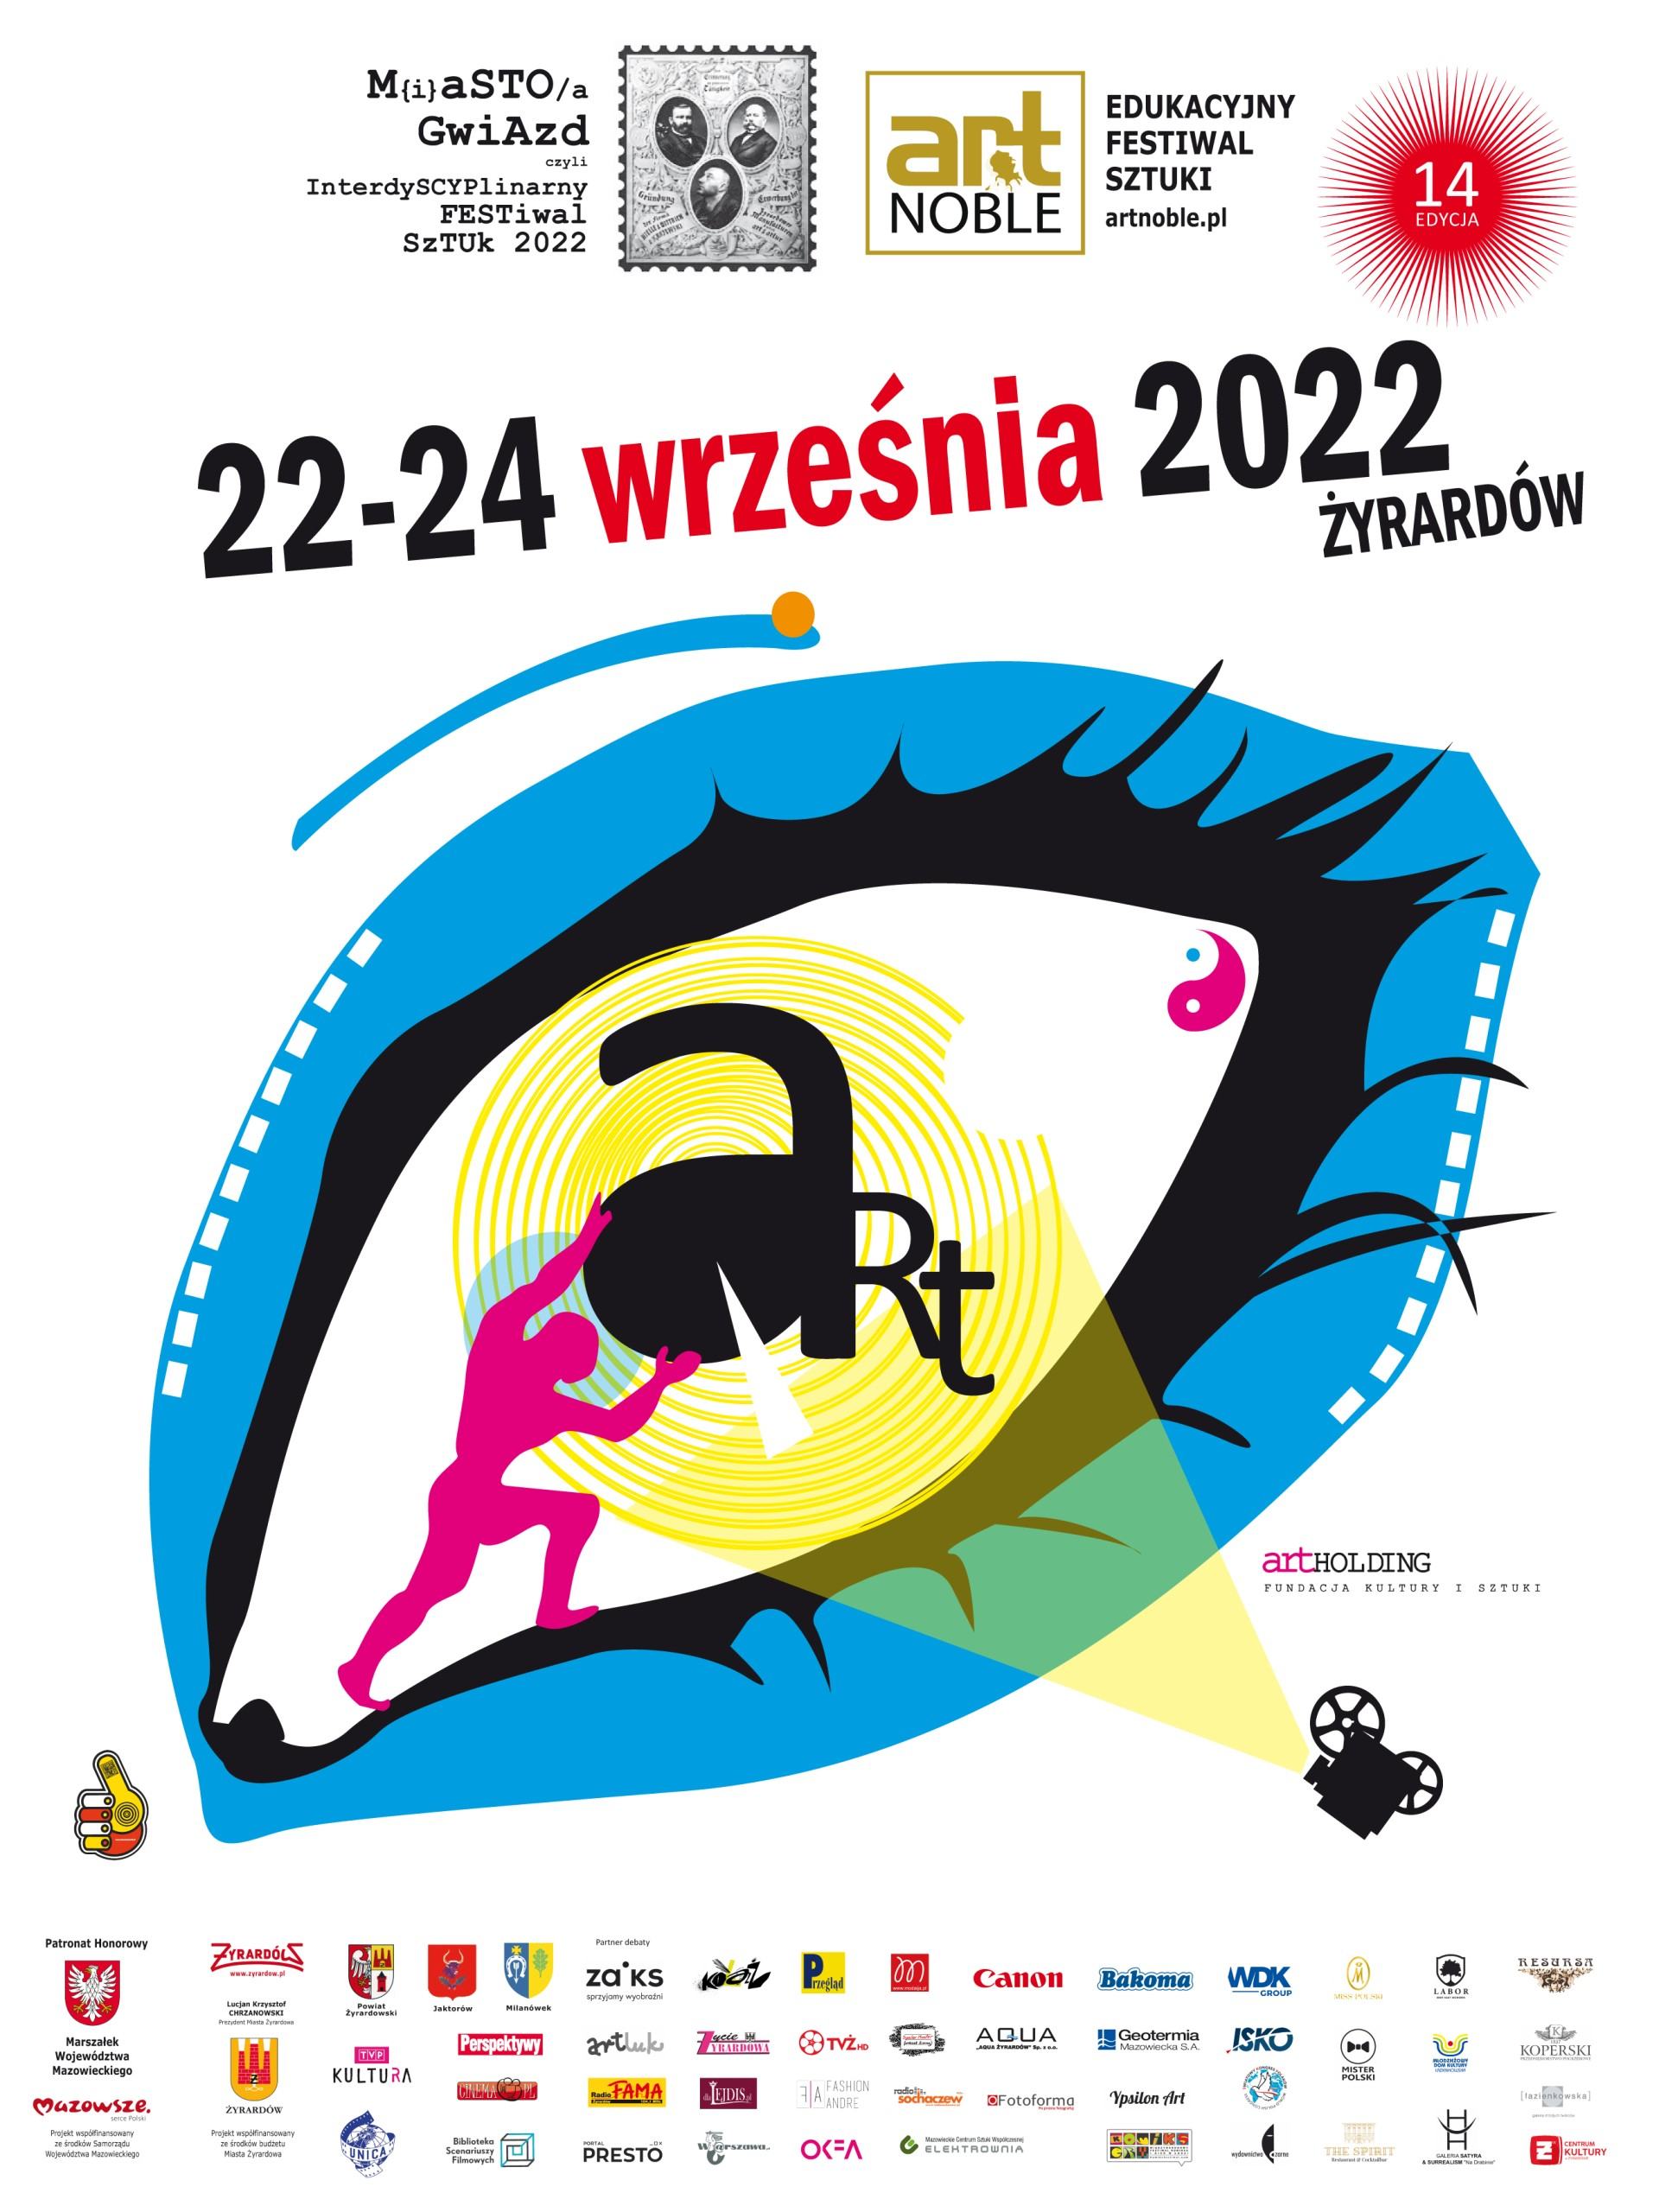 Plakat promujący XVI Interdyscyplinarny Festiwal Sztuk w Żyrardowie